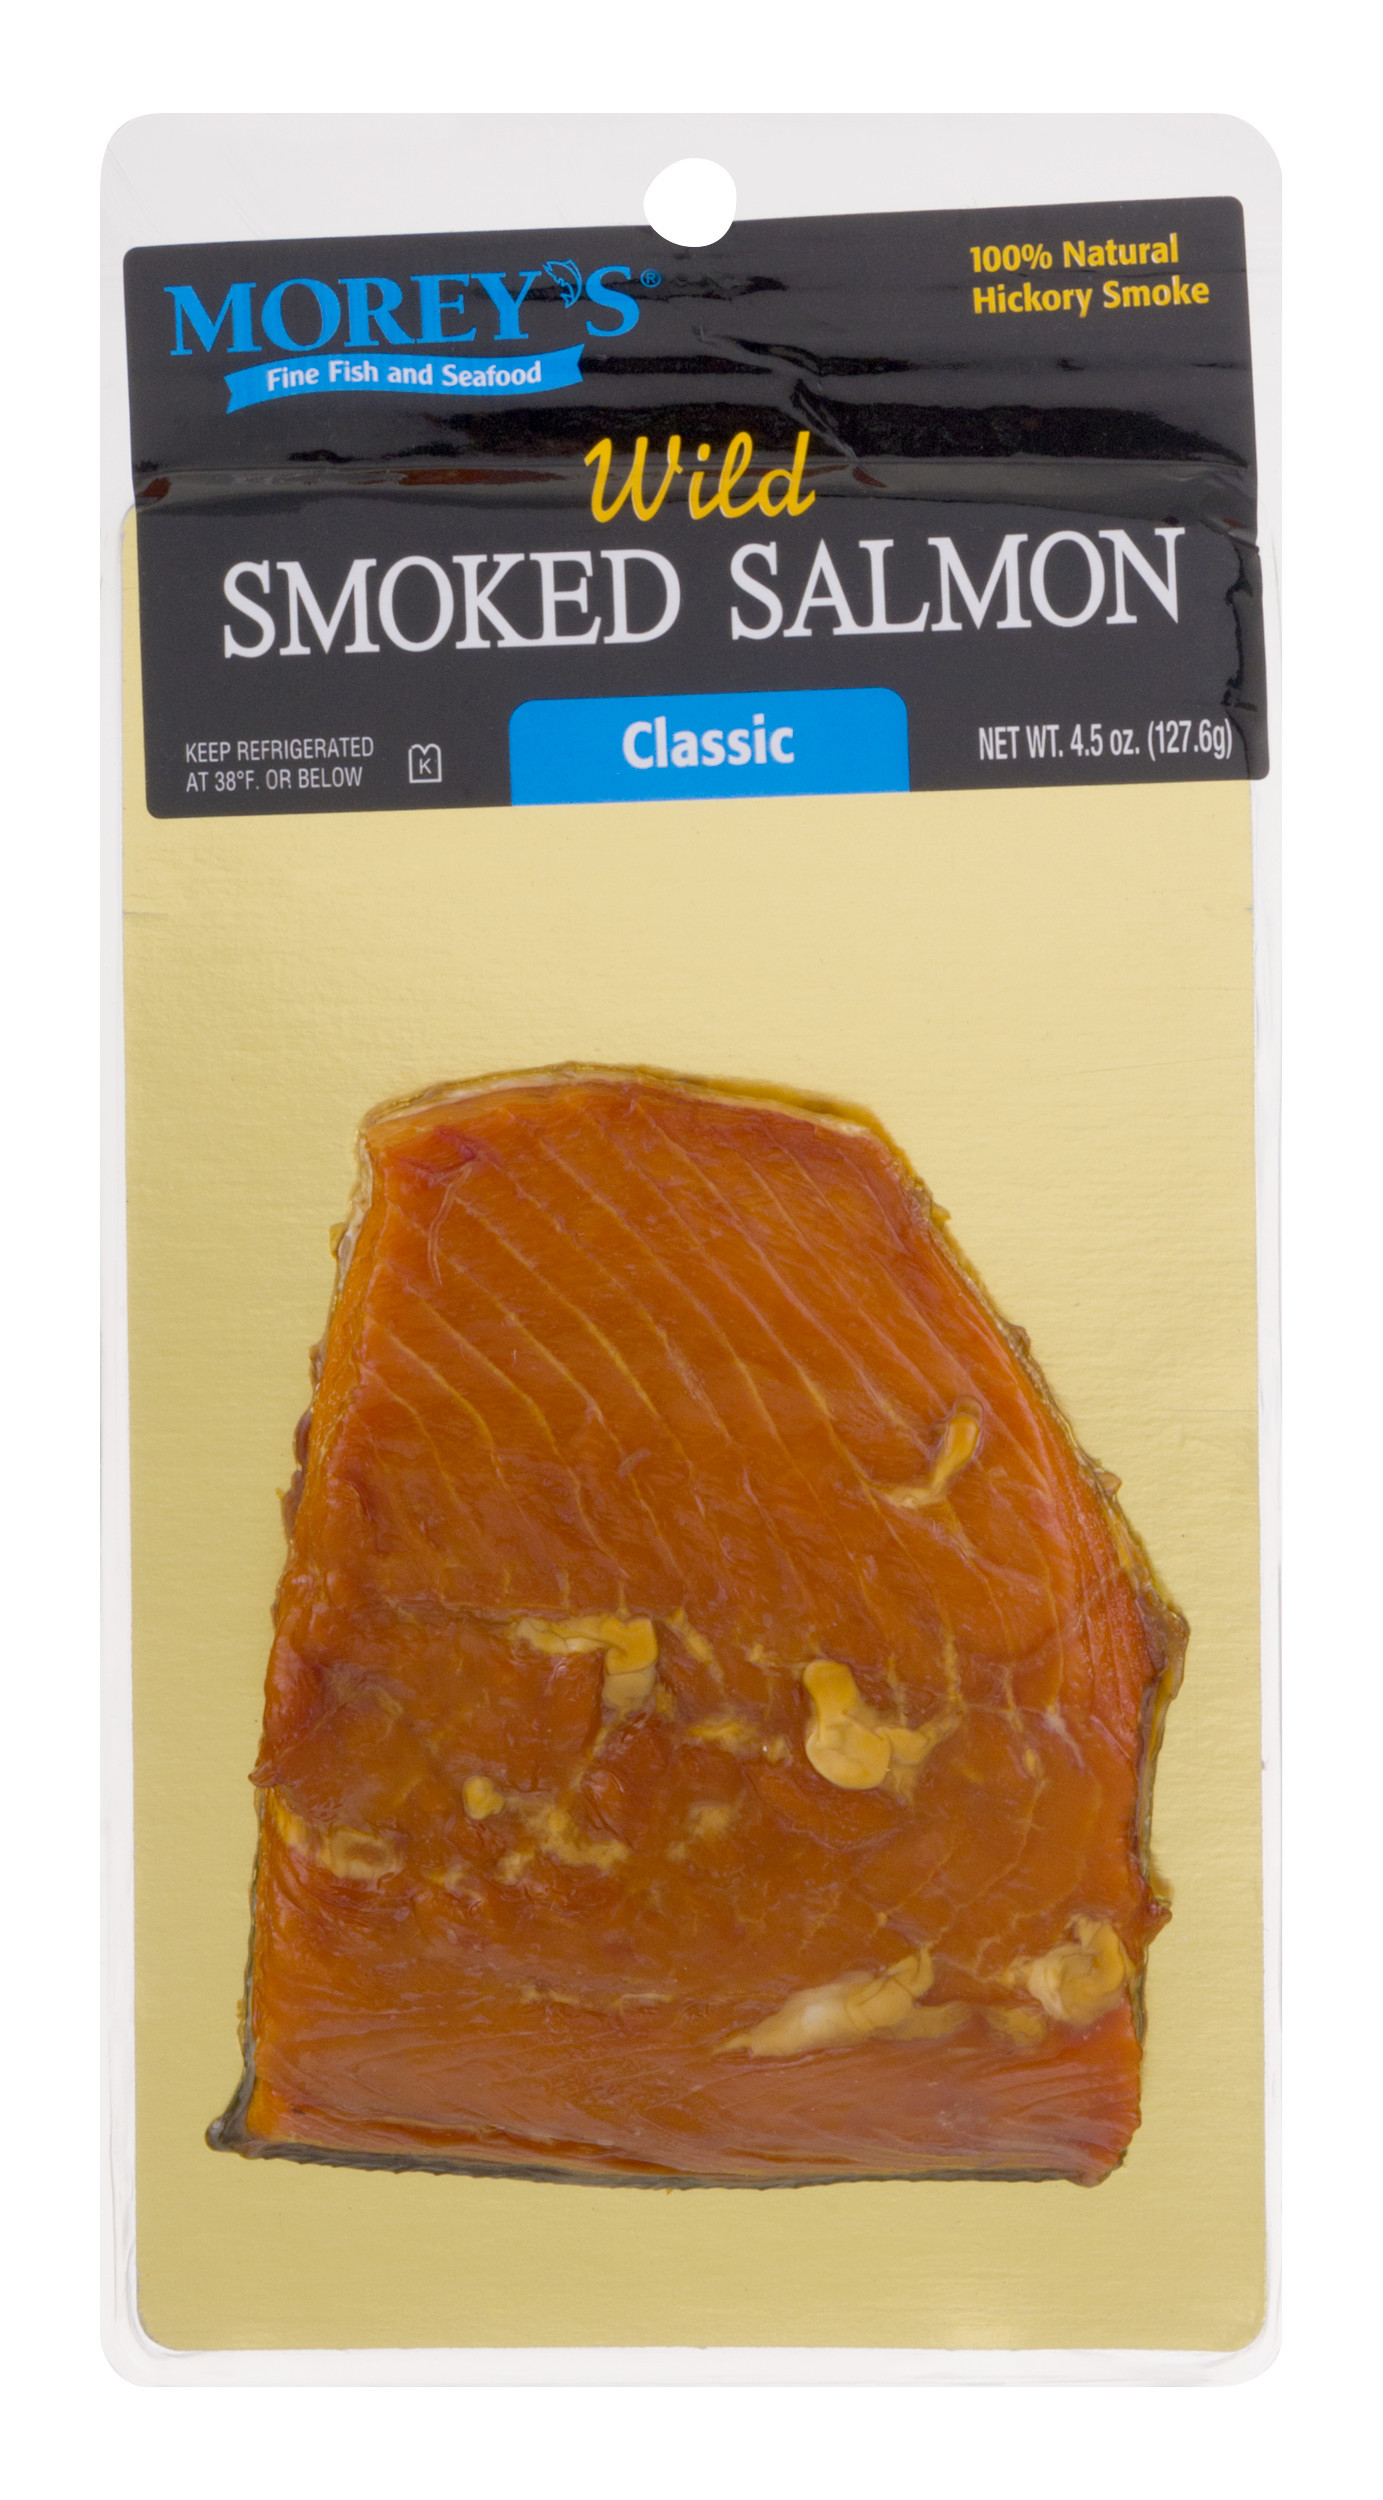 Smoked Salmon Walmart
 Morey s Wild Smoked Salmon Classic 4 5 oz Walmart